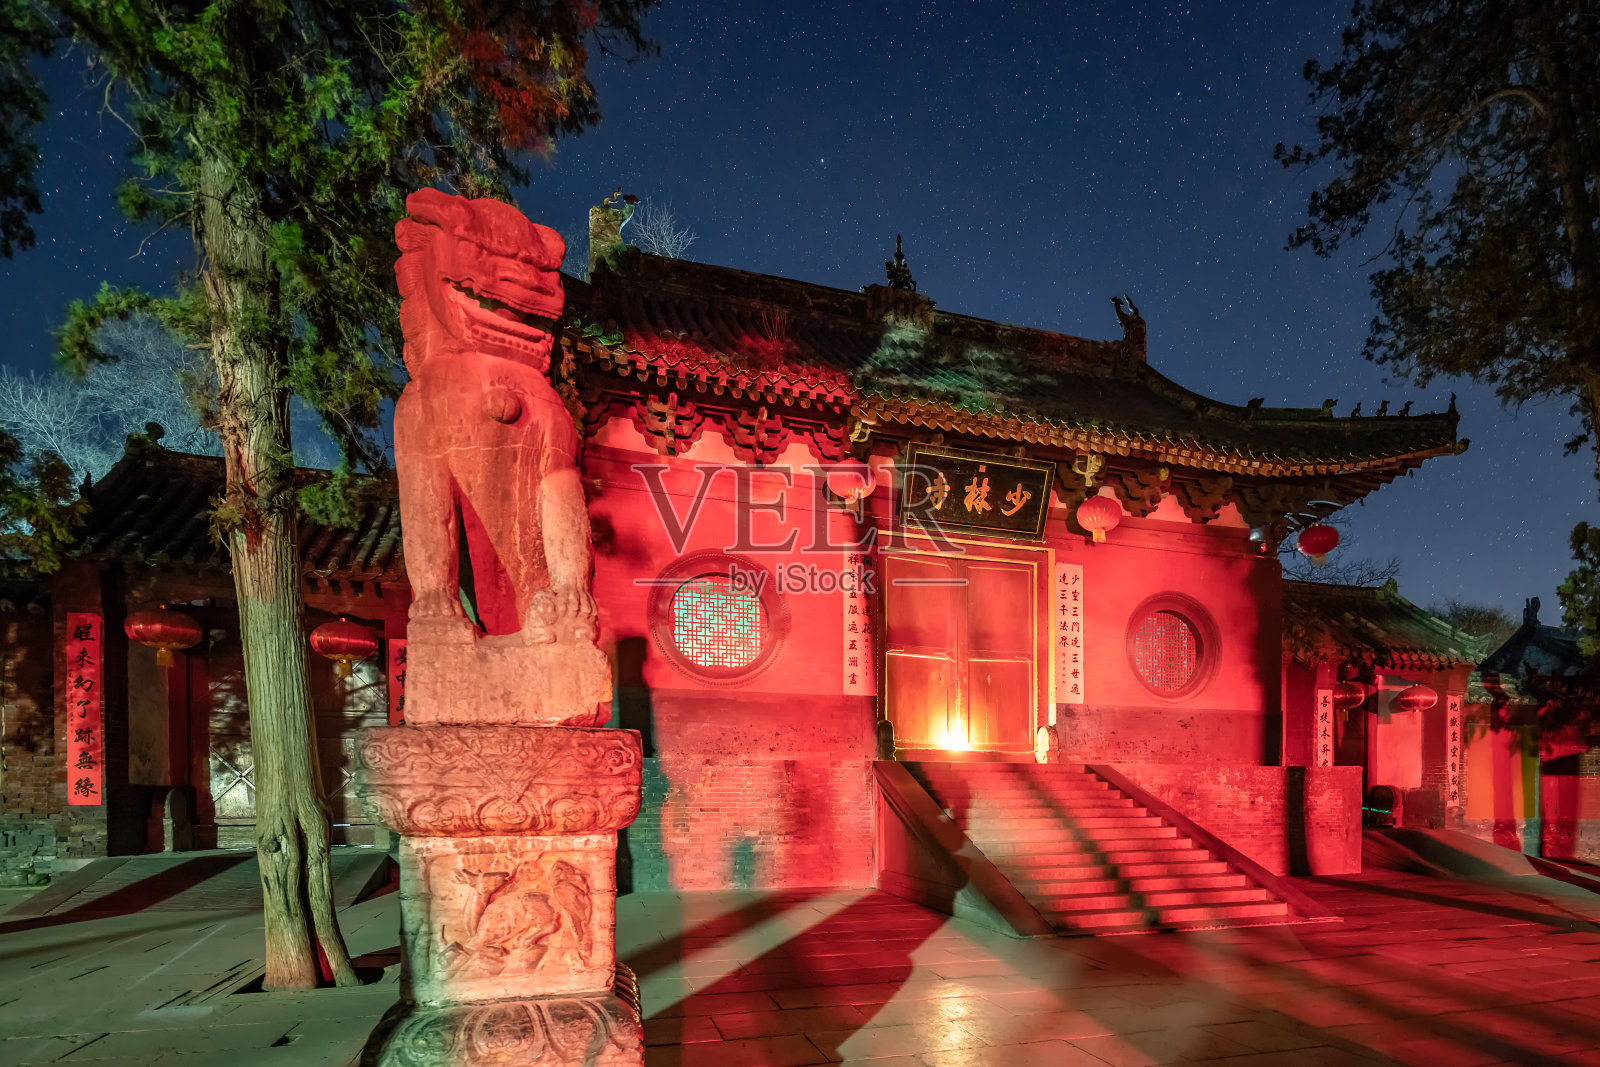 少林寺之夜照片摄影图片